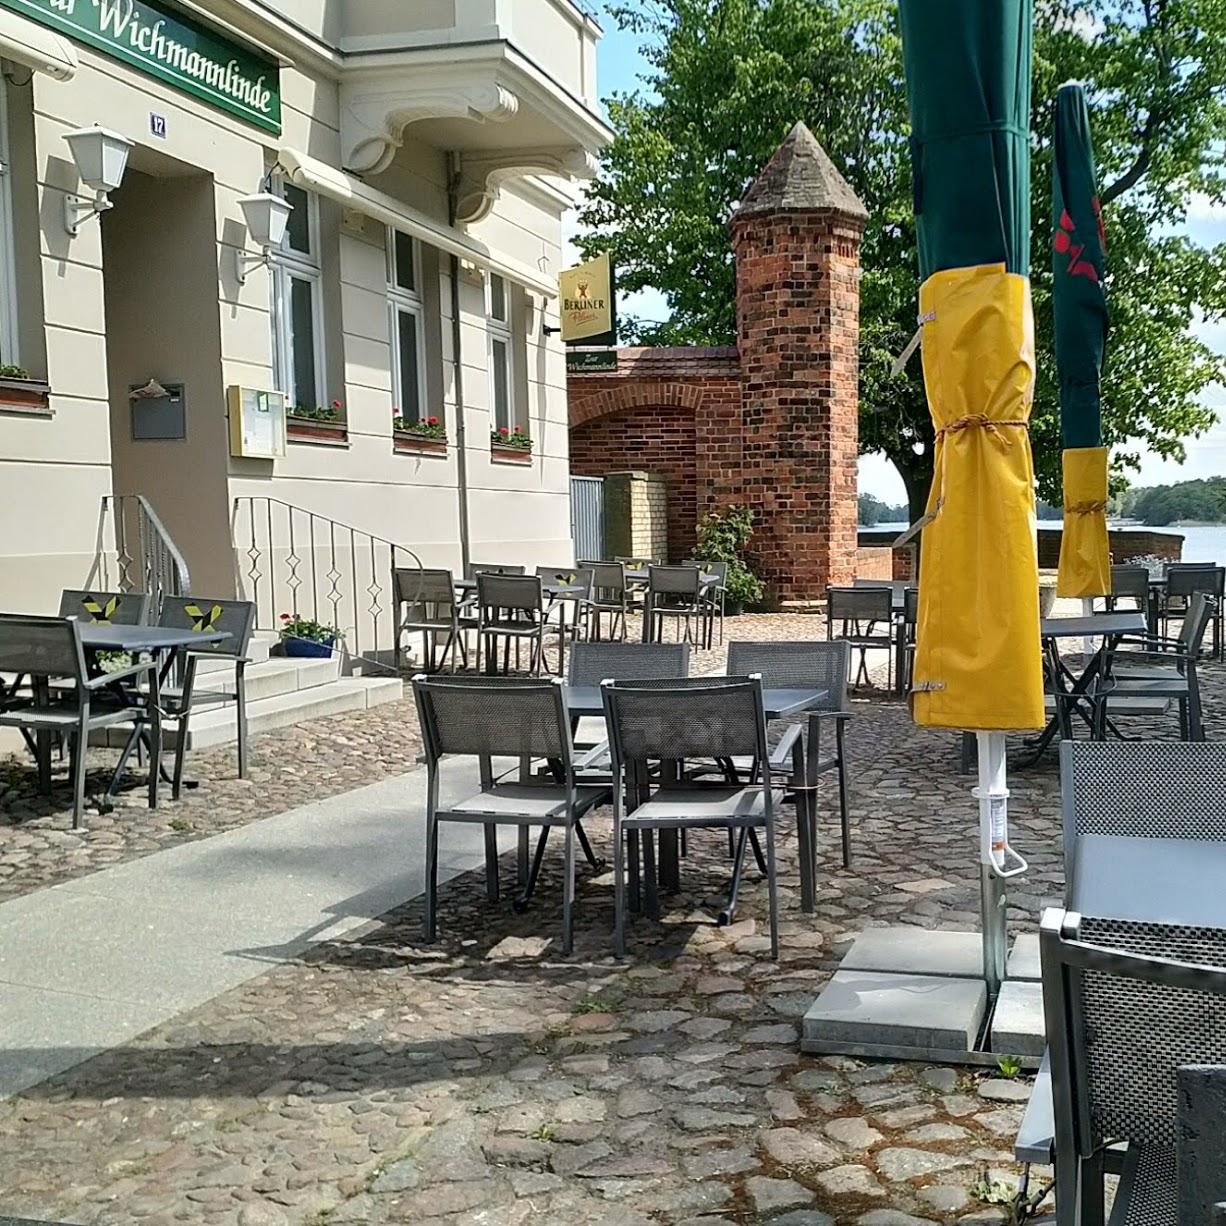 Restaurant "Gaststätte Zur Wichmannlinde" in  Neuruppin